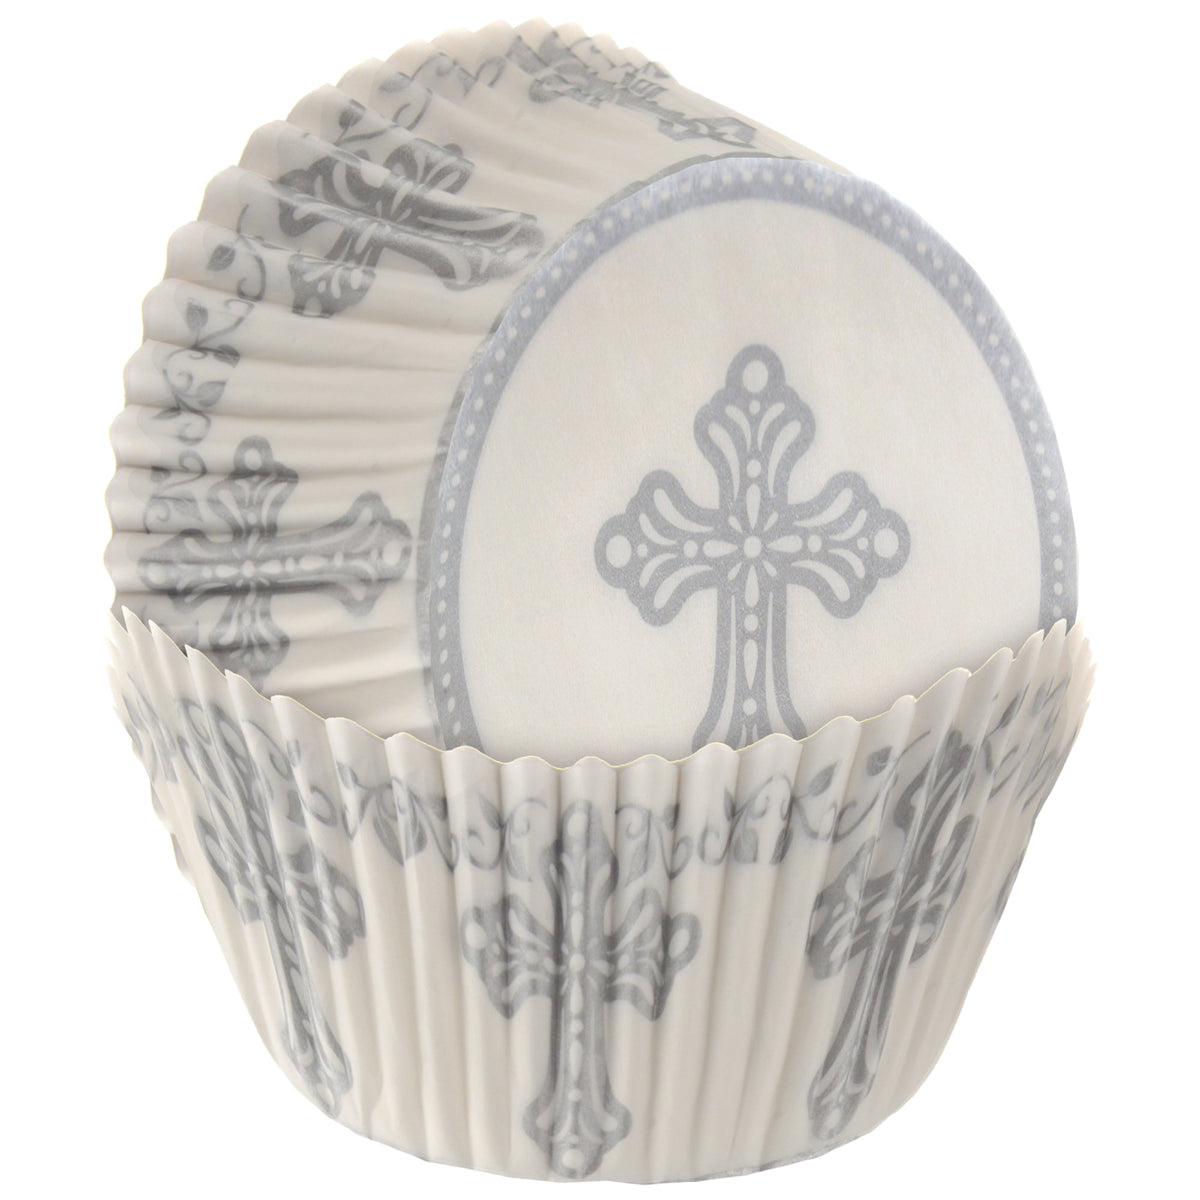 Religious Cupcake Cases